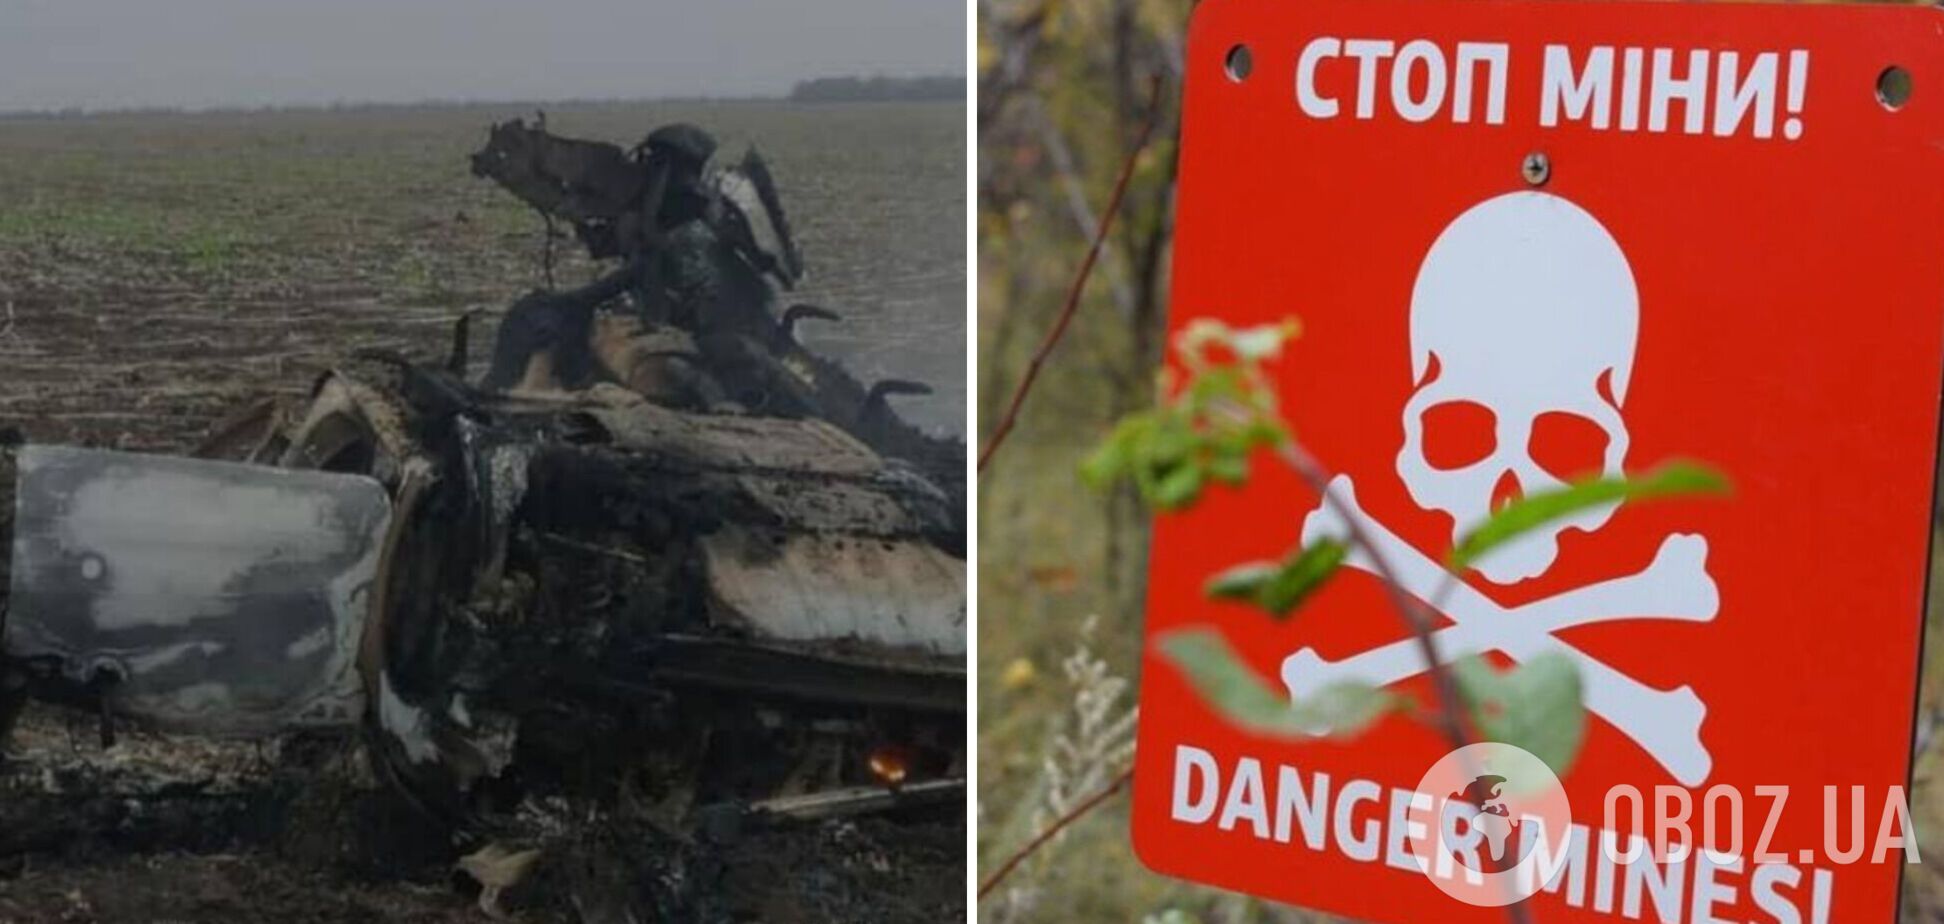 В Херсонской области на противотанковой мине подорвался гражданский автомобиль, есть погибший: детали трагедии